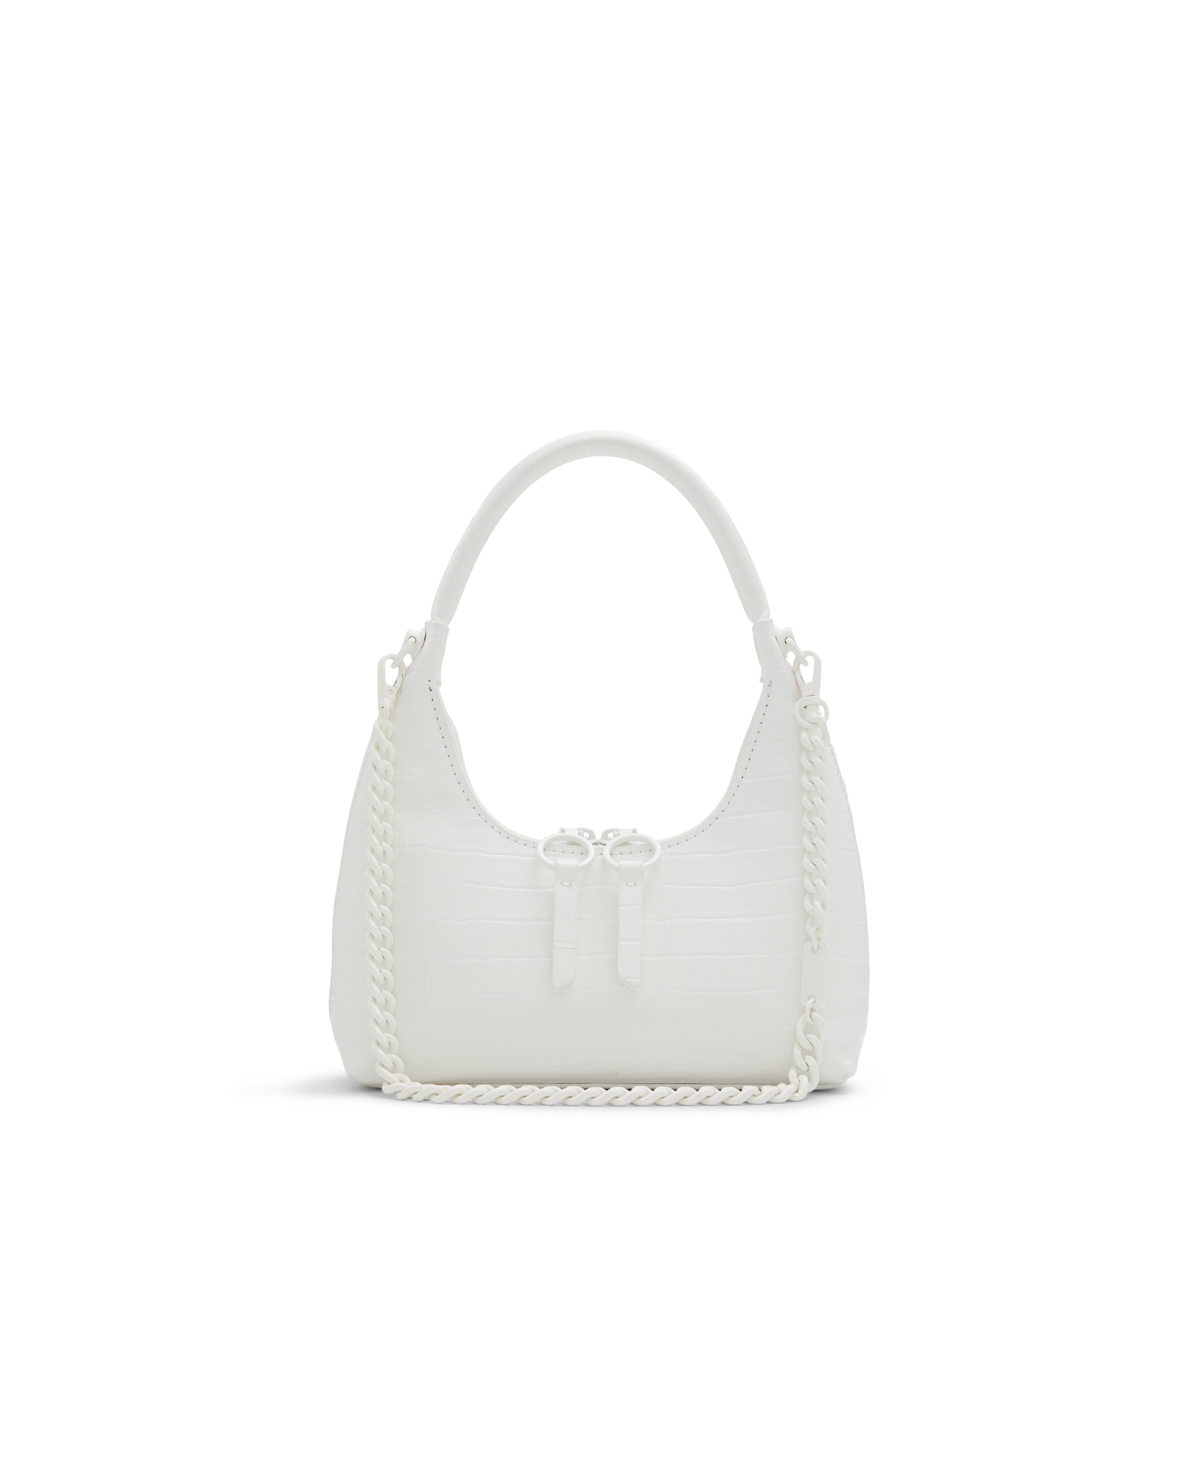 Yvanax Women's City Handbags - White